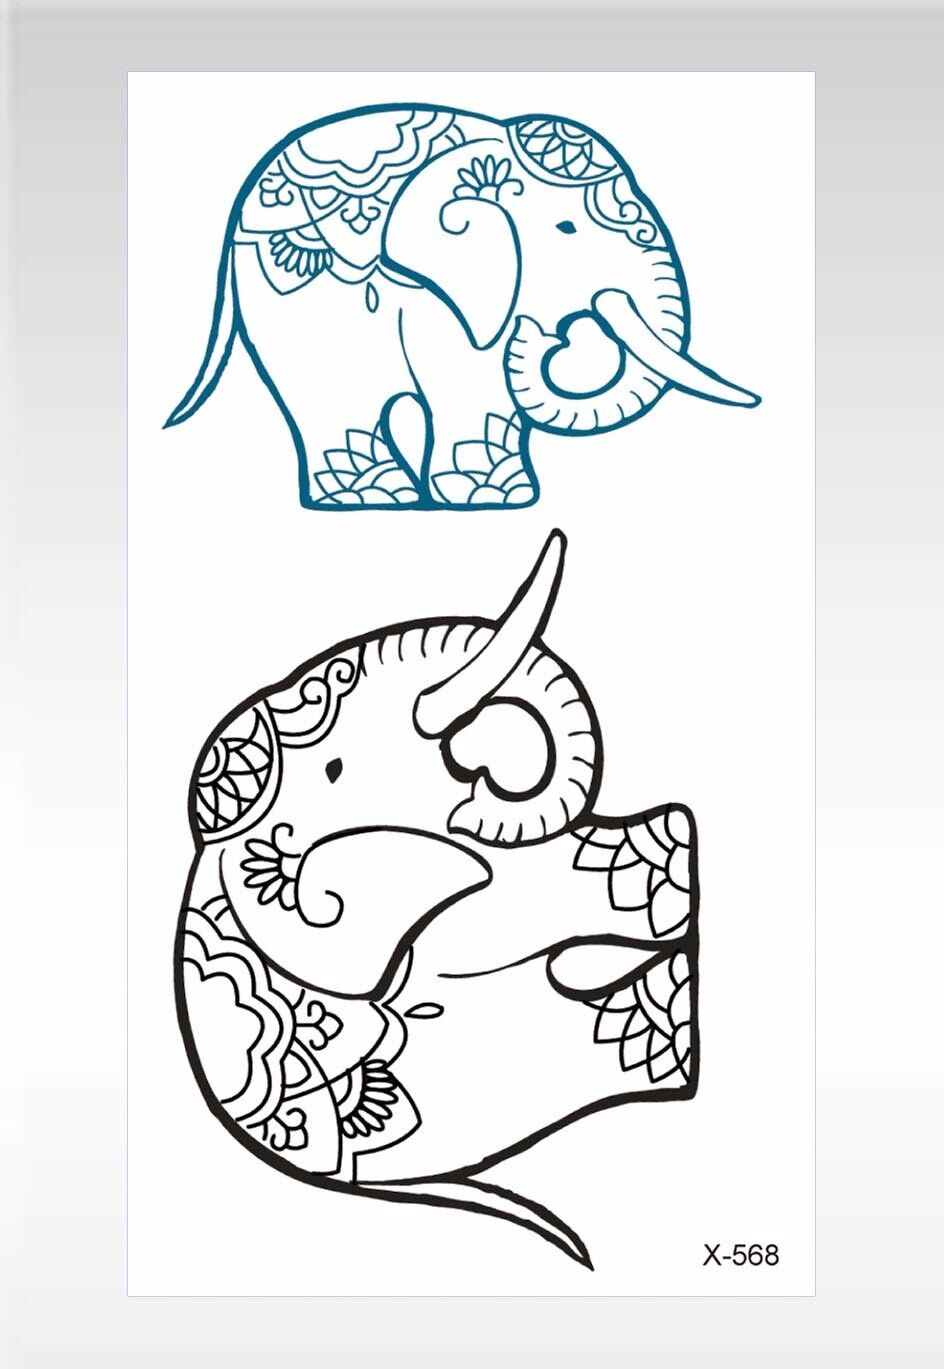 bohemian hippy waterproof lucky elephant animal temporary tattoo | eBay